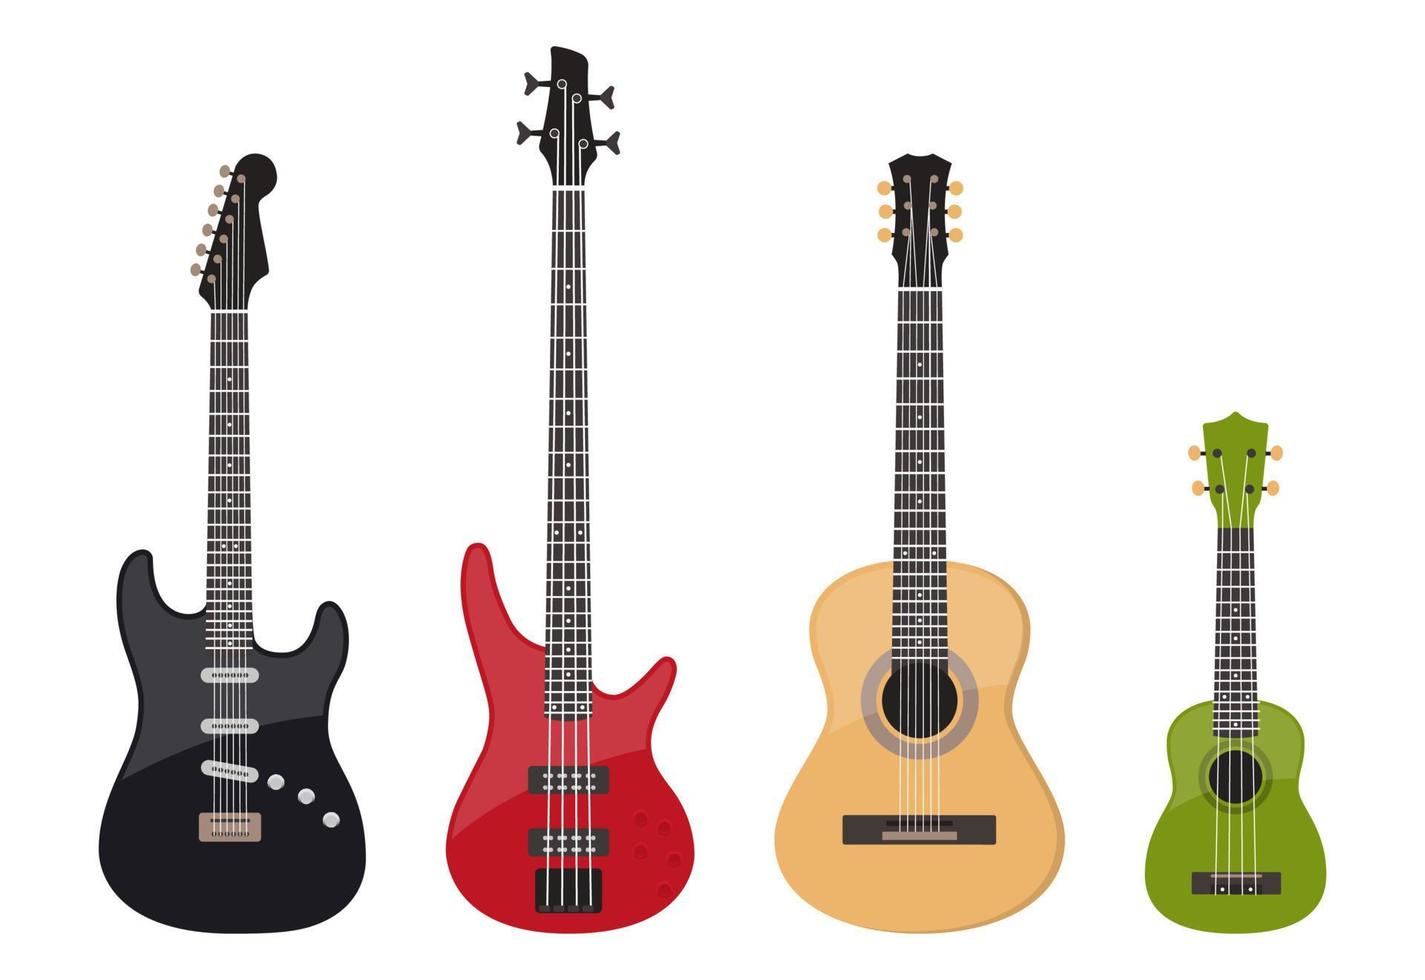 vários conjuntos de guitarras, guitarra elétrica, guitarra baixo, violão e ukulele, vetor isolado no branco